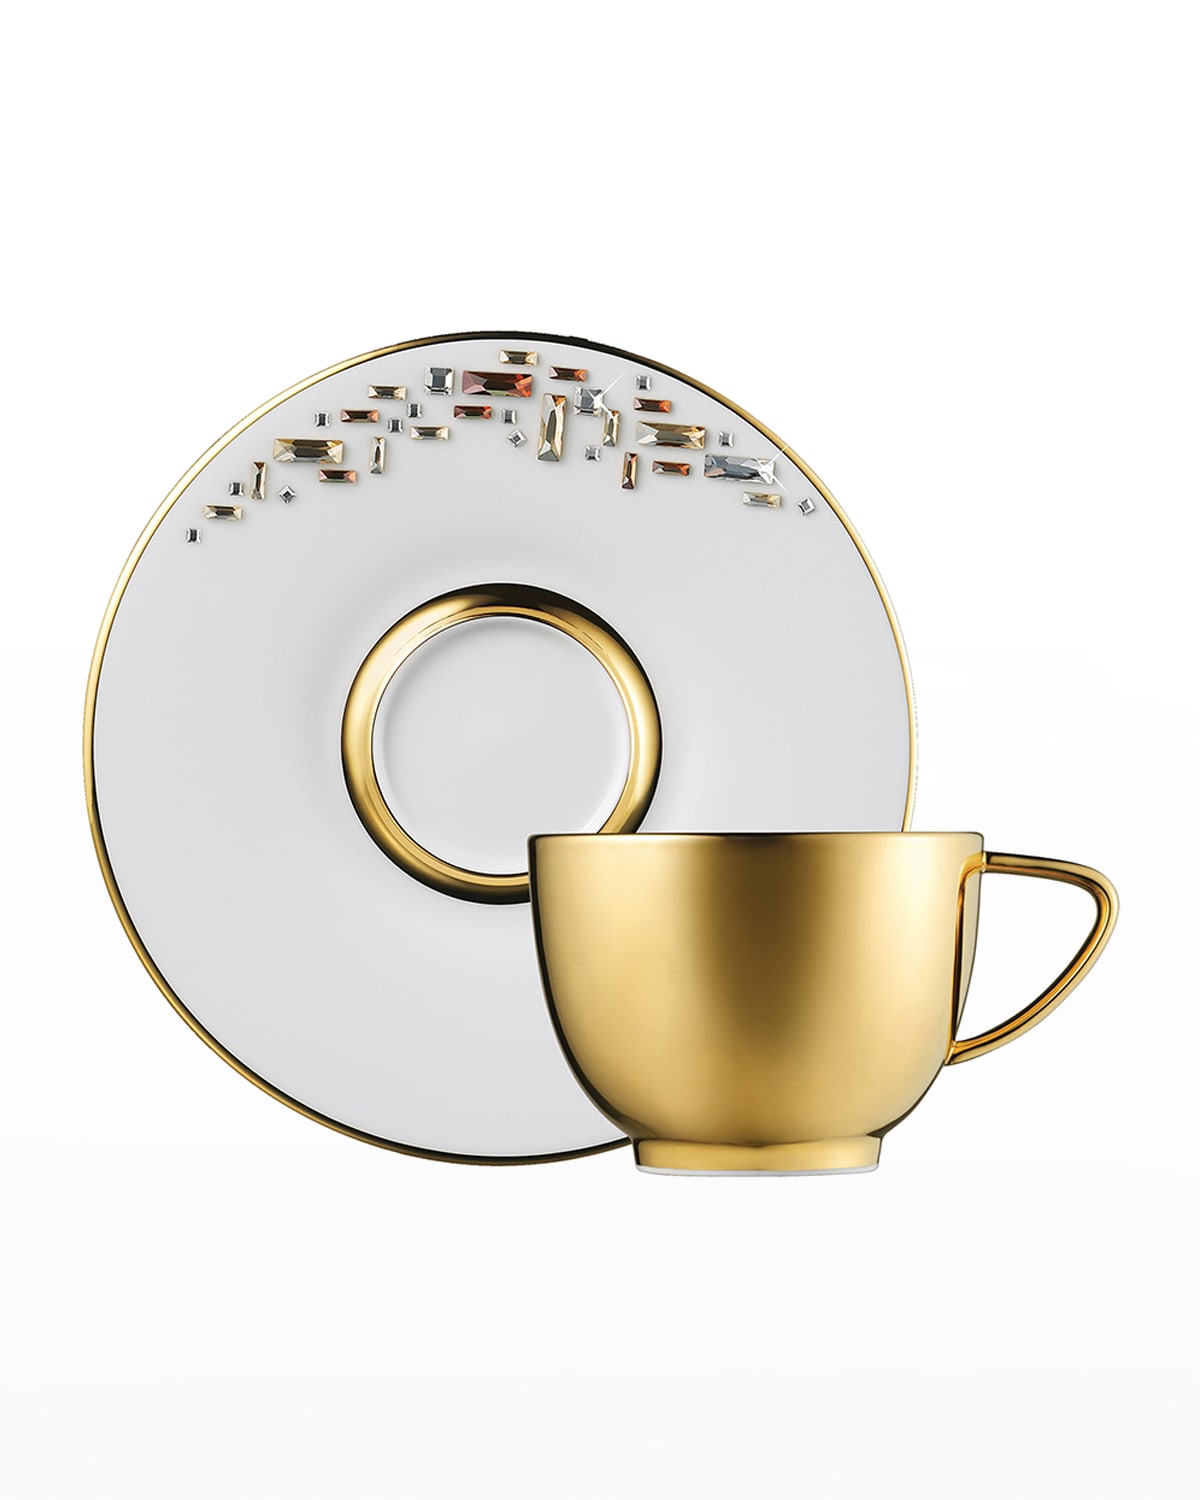 Prouna Diana Teacup & Saucer In Gold